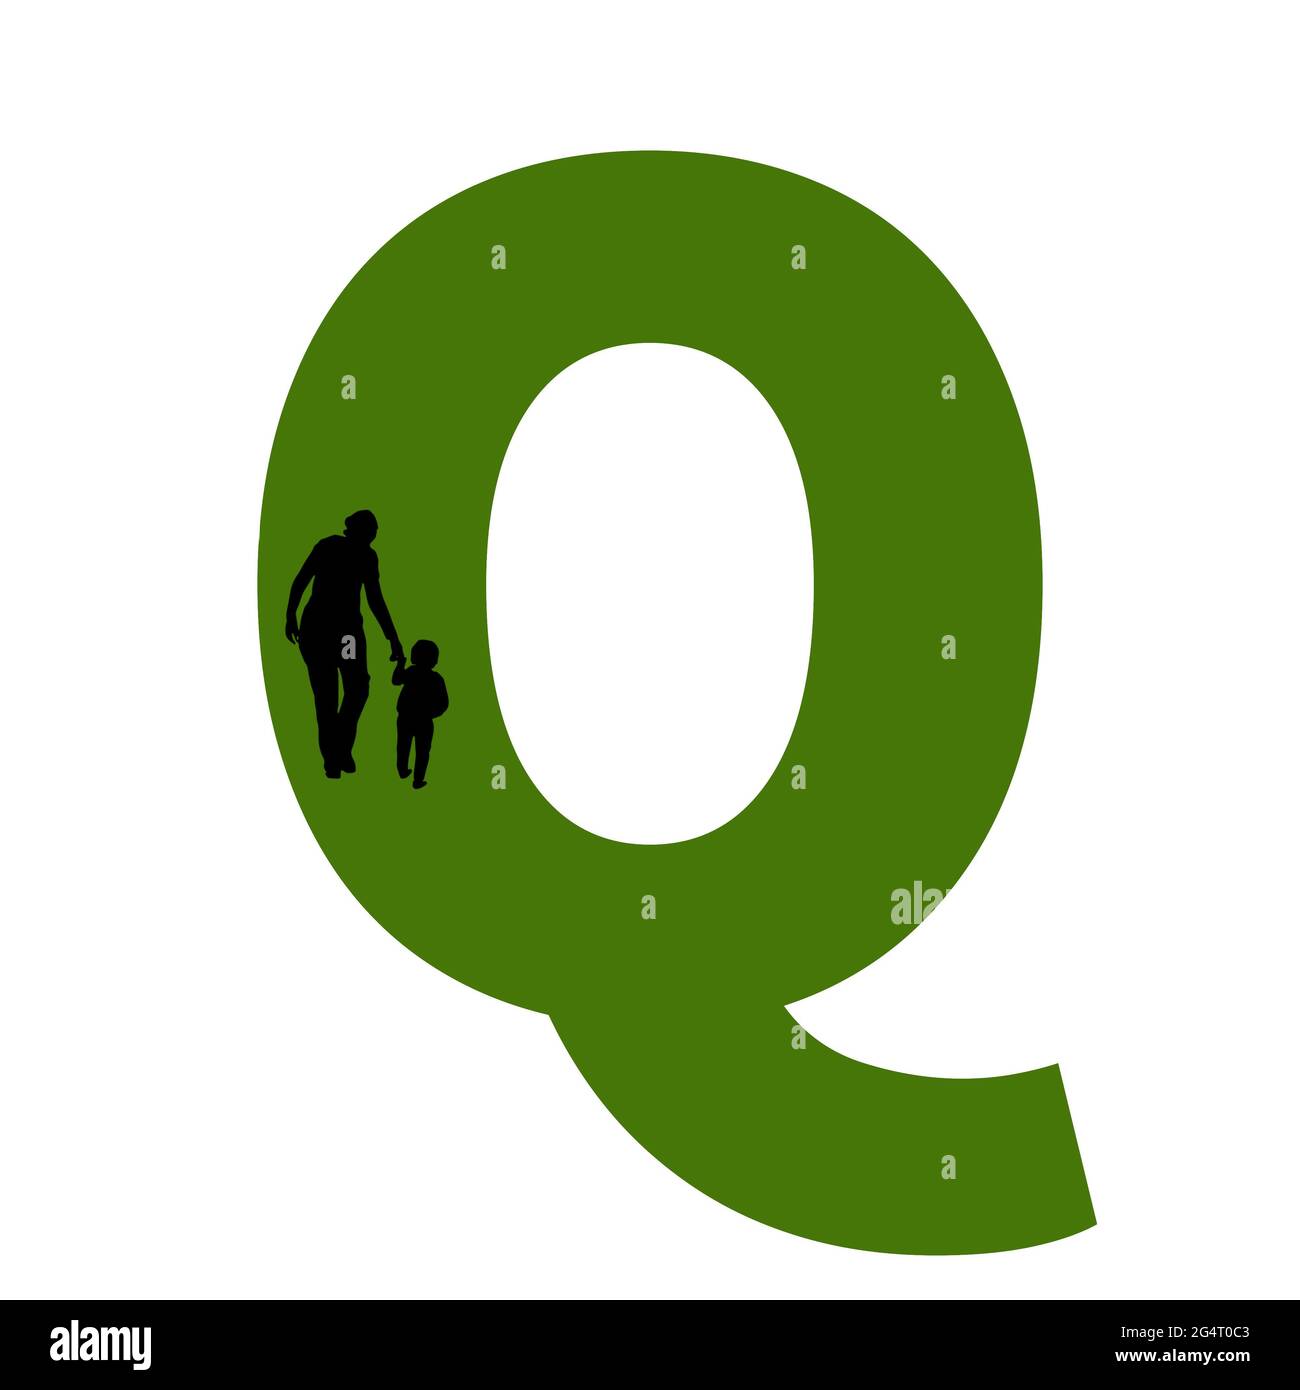 Letra Q del alfabeto hecha con la silueta de una madre y un niño caminando, en verde y negro Foto de stock